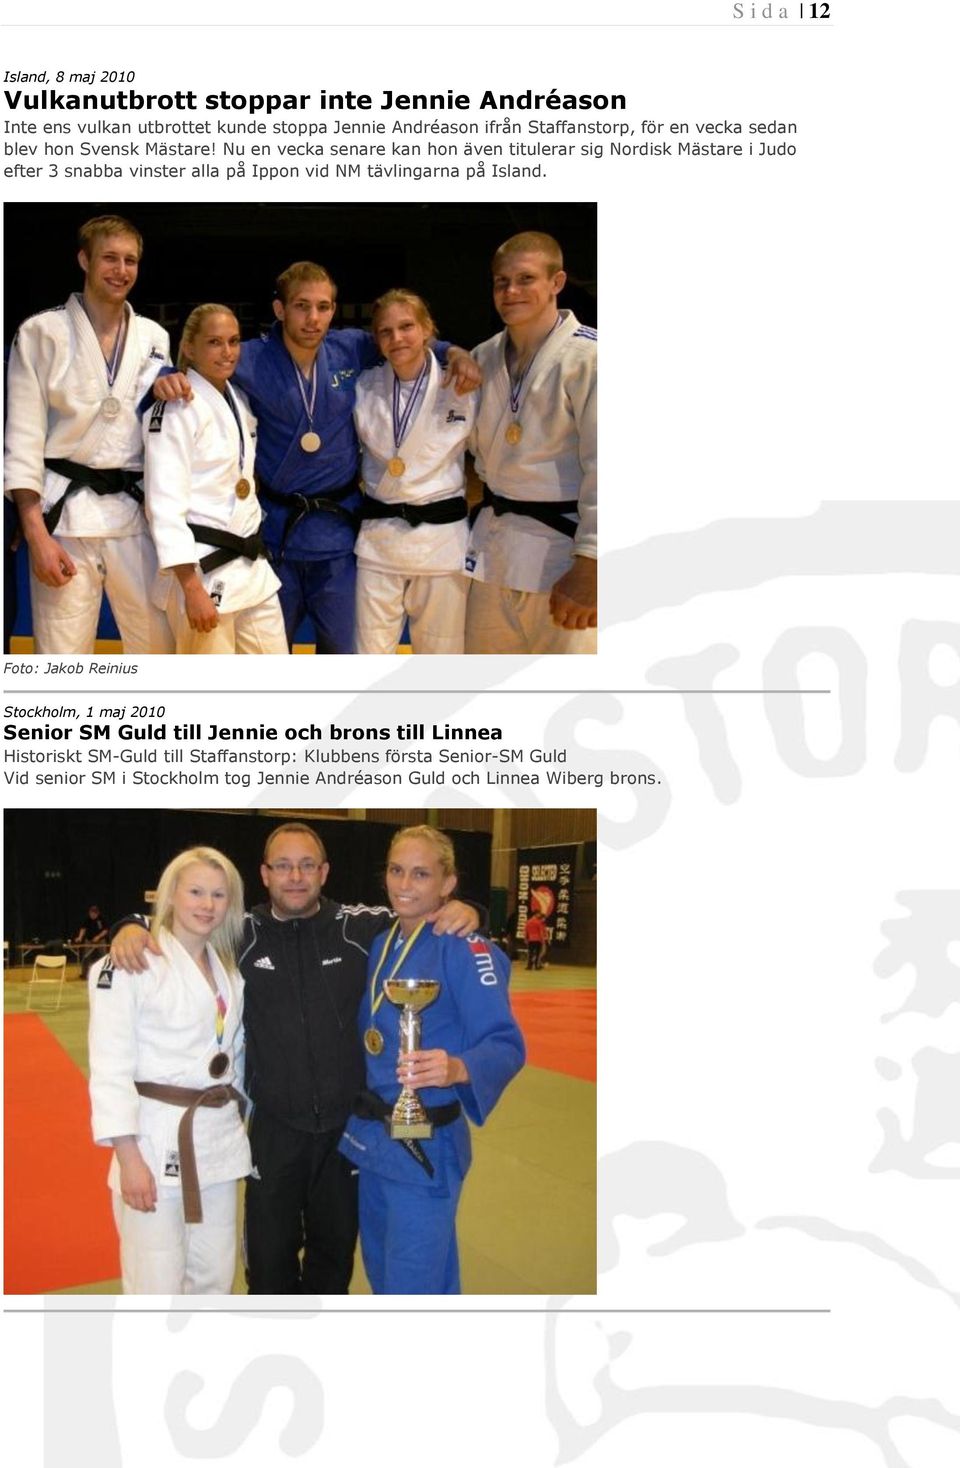 Nu en vecka senare kan hon även titulerar sig Nordisk Mästare i Judo efter 3 snabba vinster alla på Ippon vid NM tävlingarna på Island.